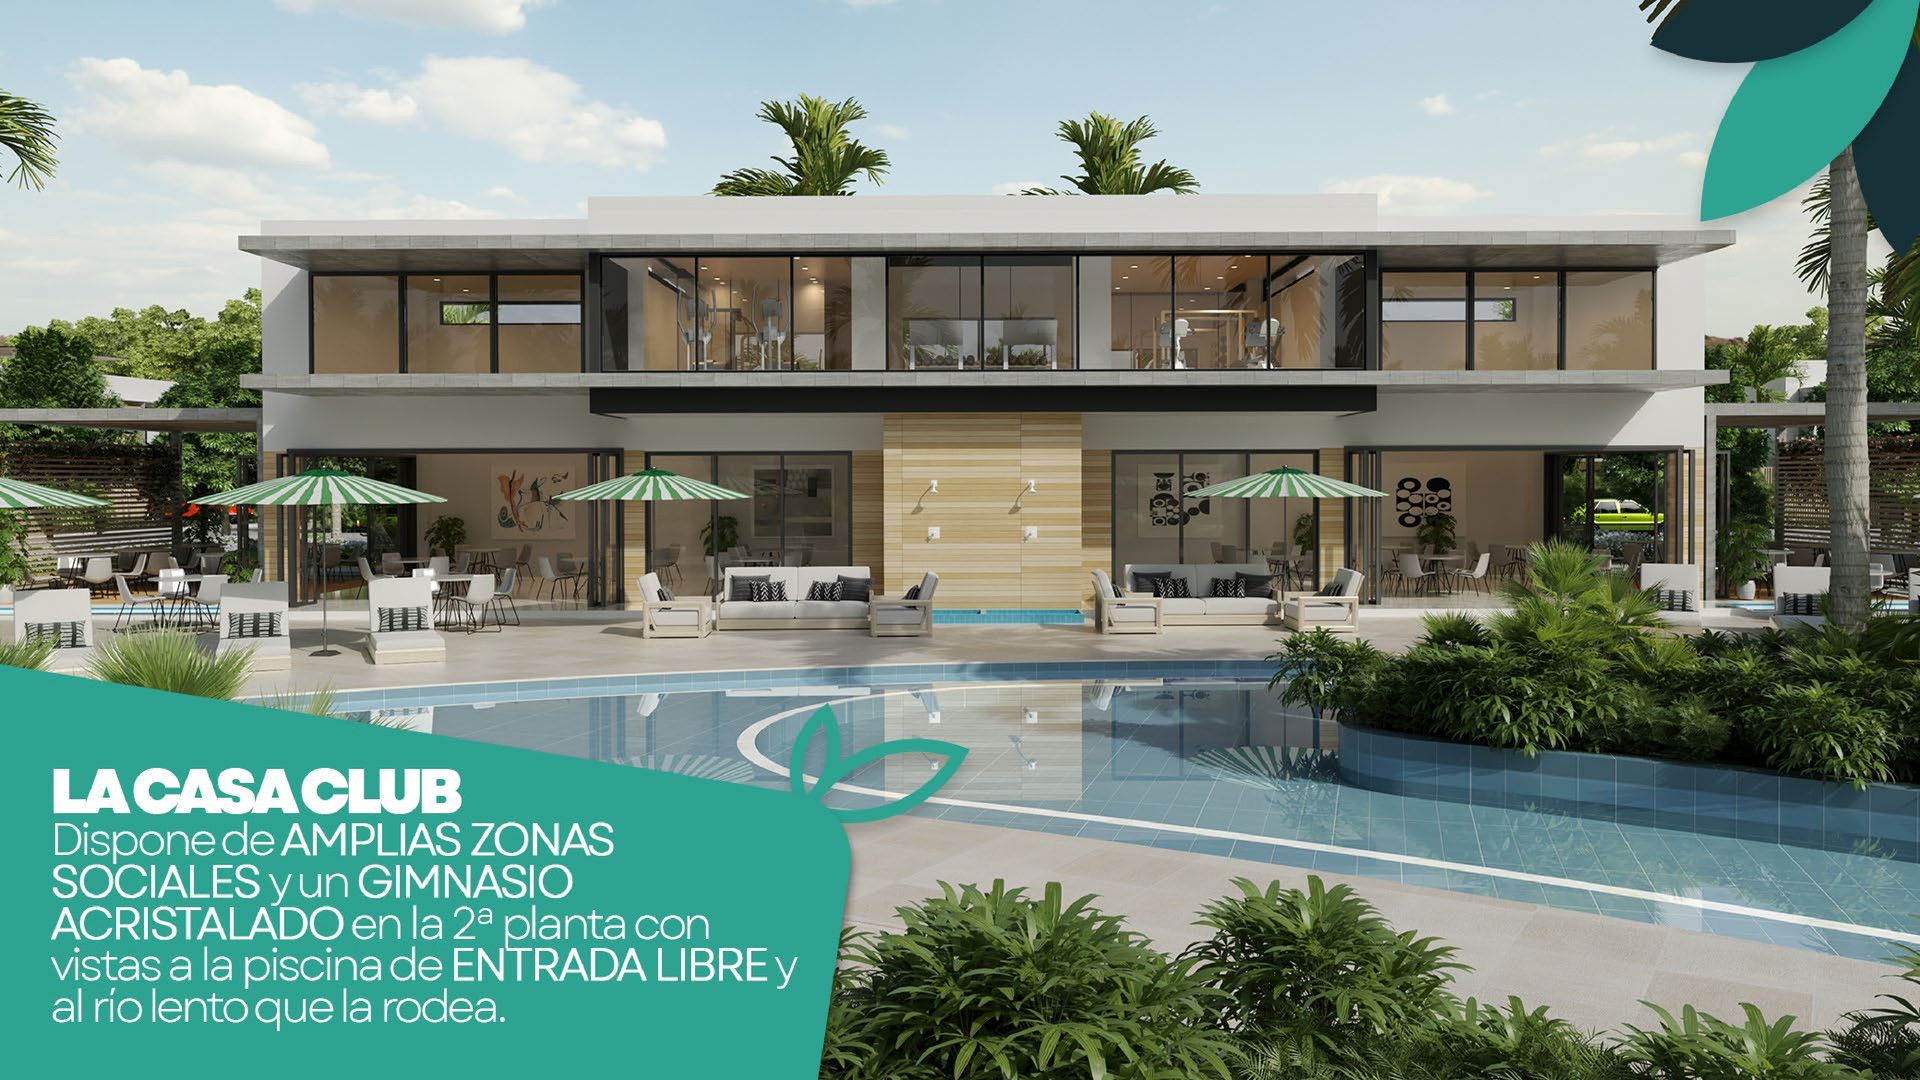 casas vacacionales y villas - Hermoso Proyecto en construccion en Punta Cana, Villas de 2 y 3 hab, amobladas.  6